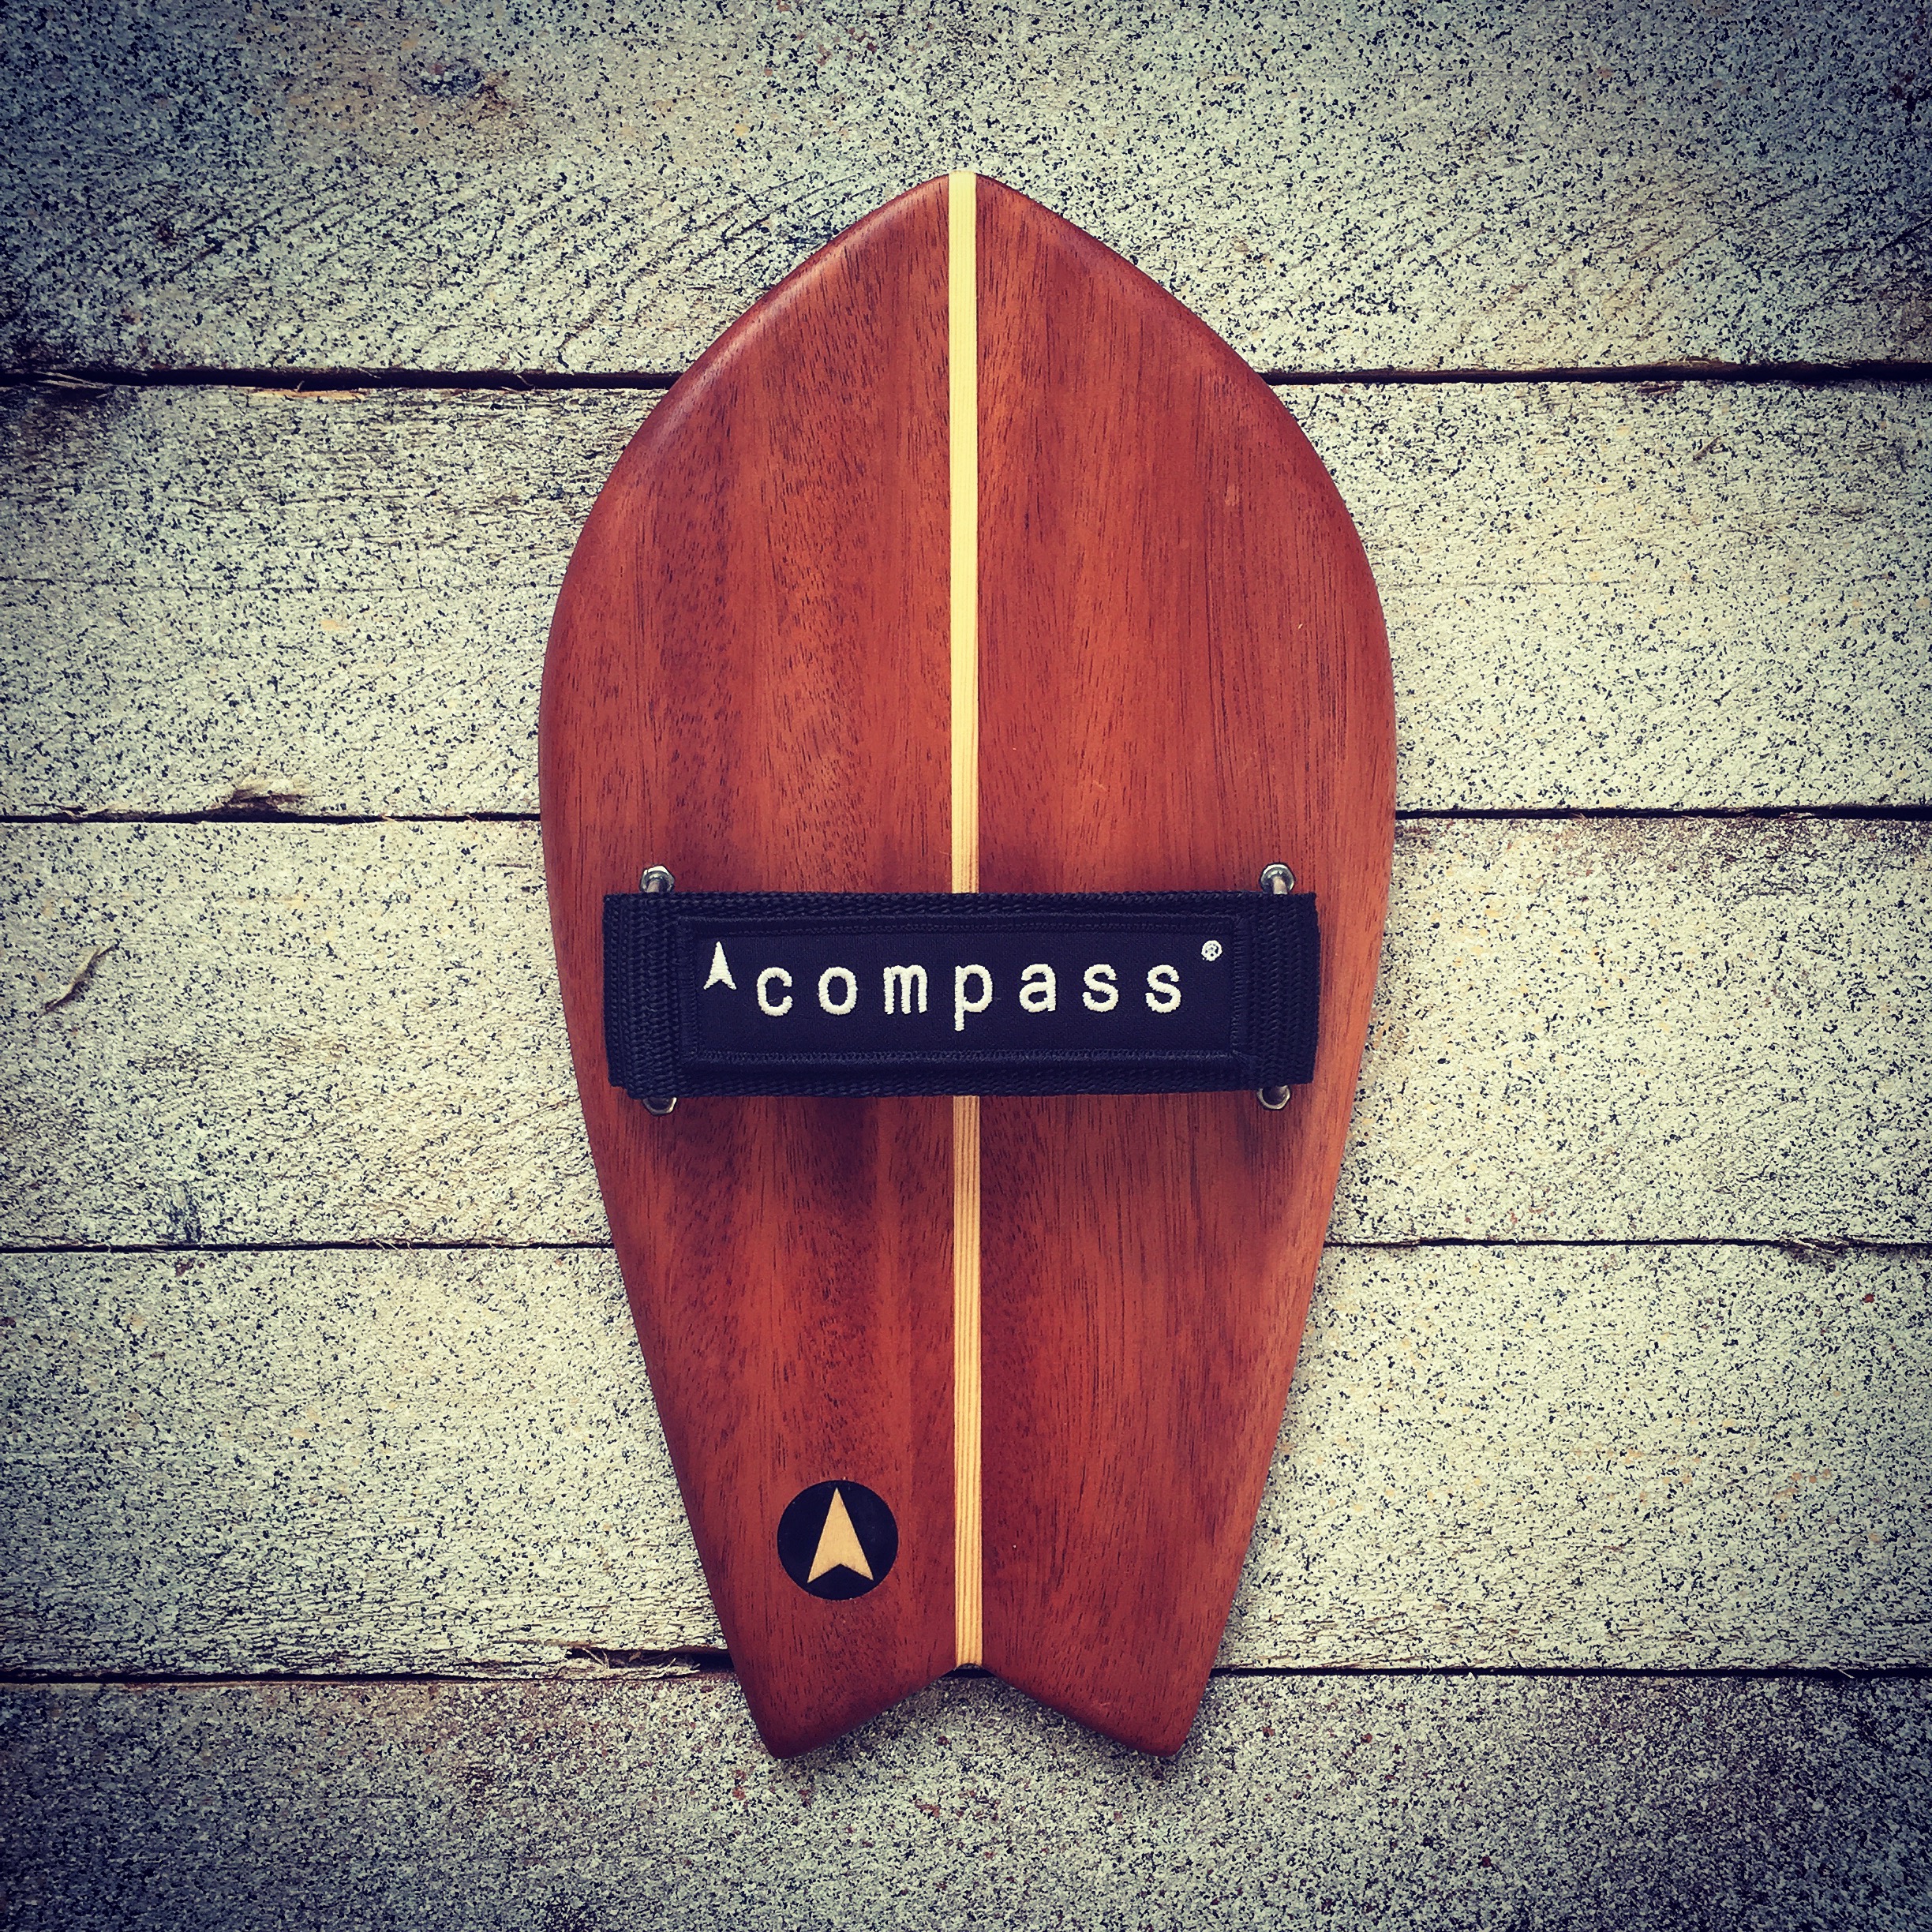 Compass handplanes gallery images instagram handplane bodysurf bodysurfing handplanes uk wooden surf